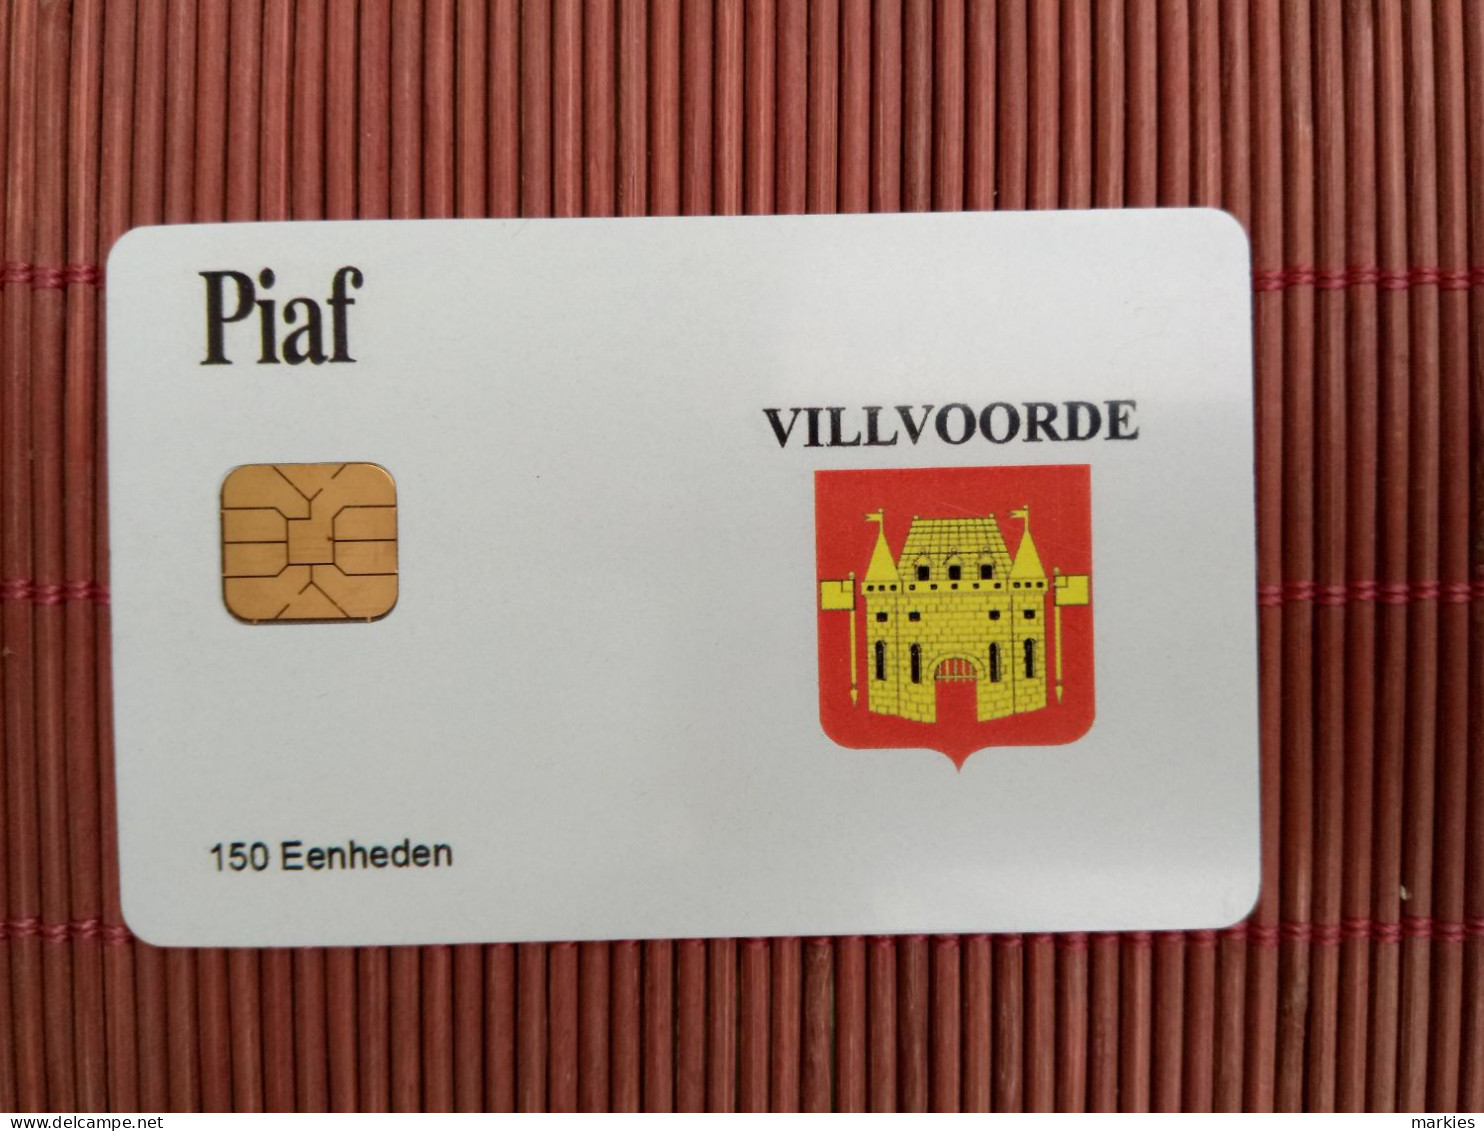 Carte Piaf  Villvoorde Ony 500 Ex Made 2 Photos Used Rare - Parkkarten